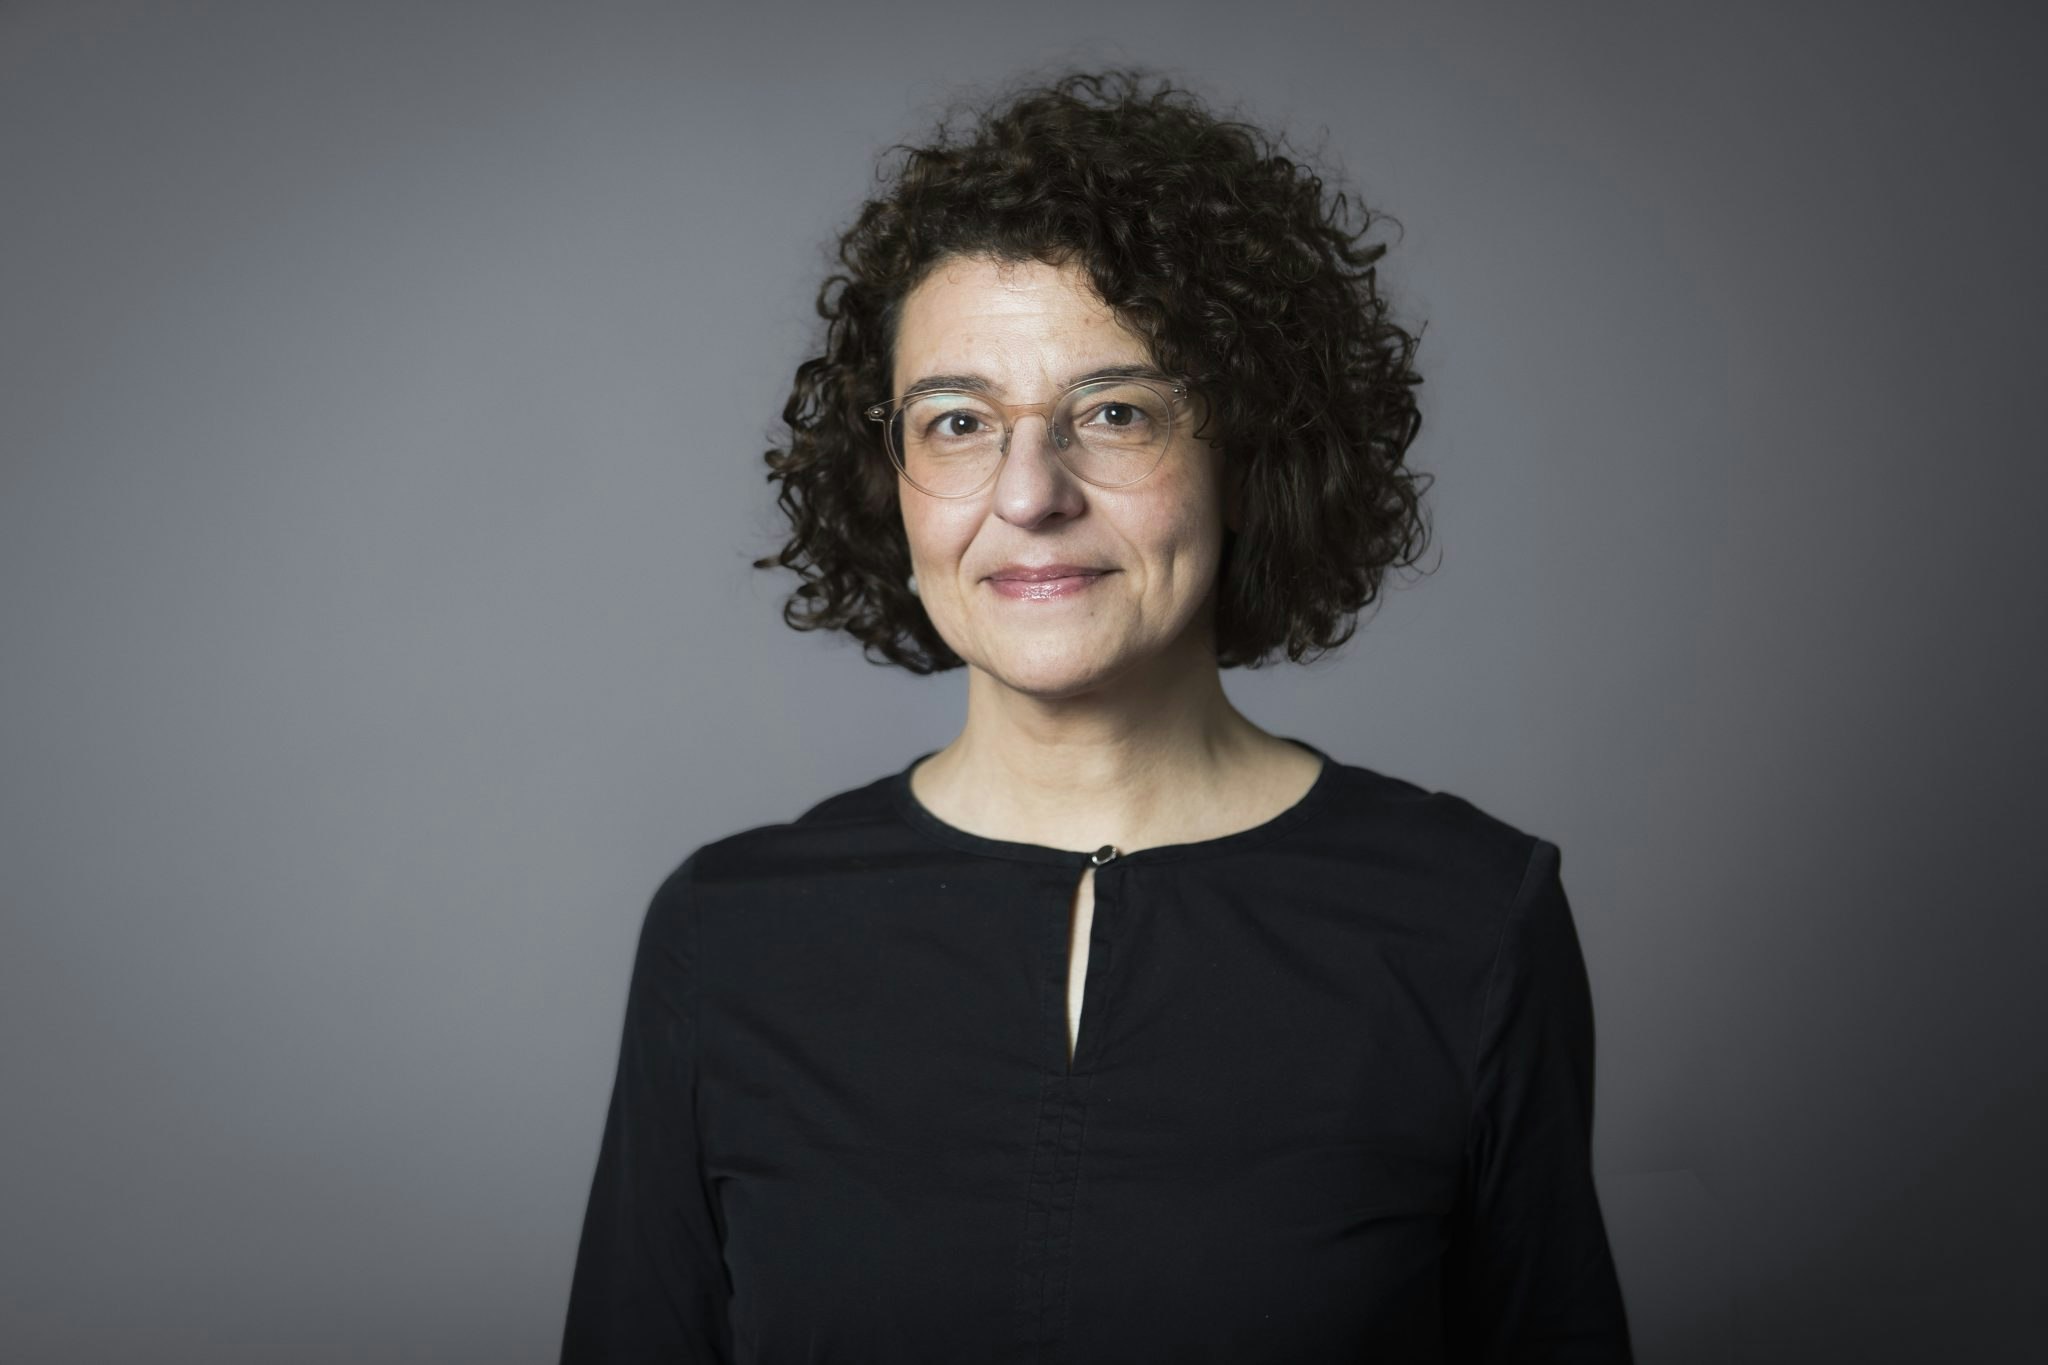 Dr Angelika Vlachou, partner at High-Tech Gründerfonds